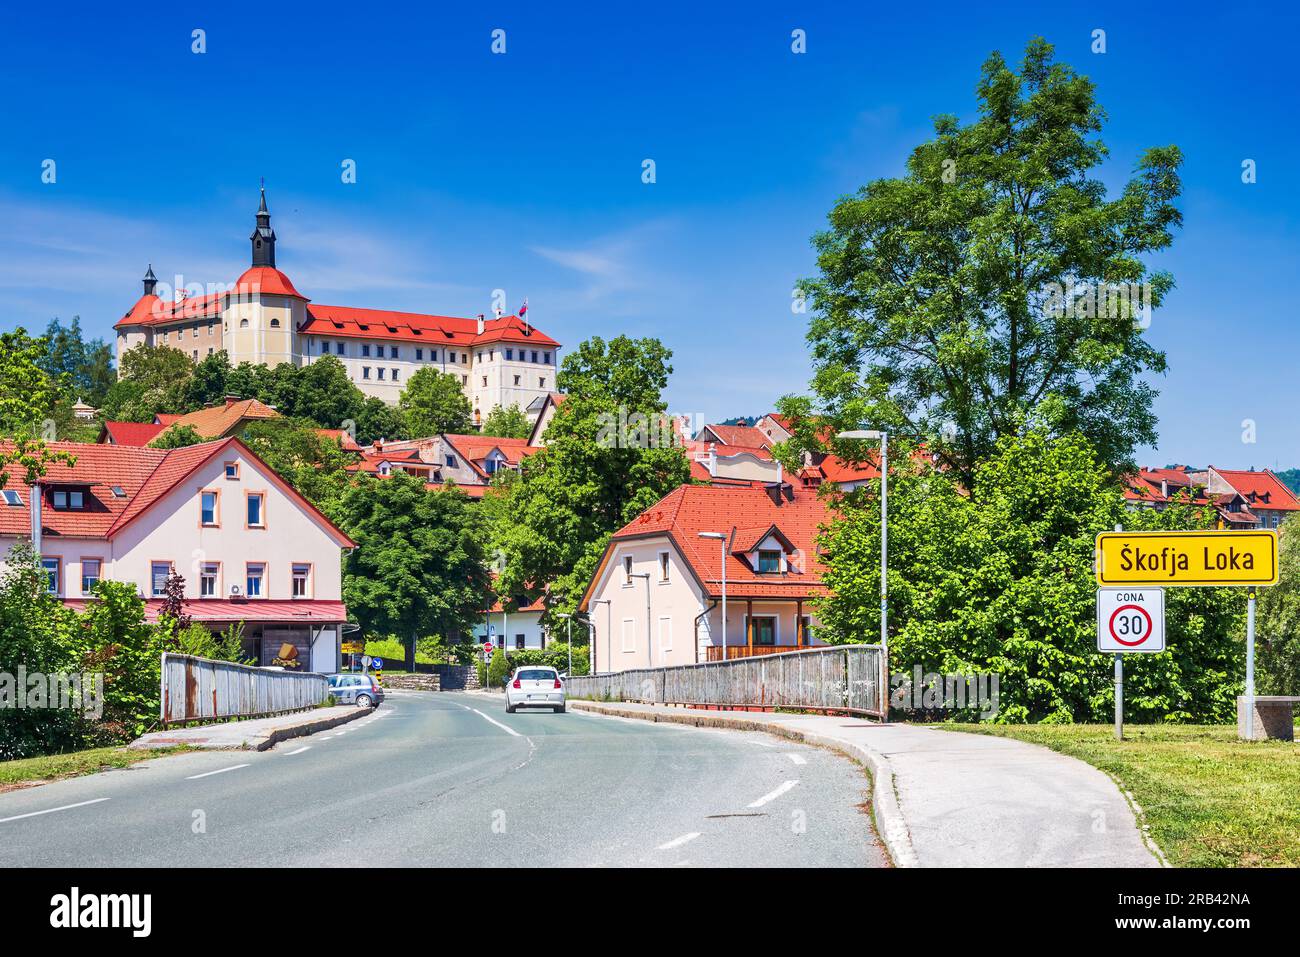 Skofja Loka, Slowenien. Stadtbild mit idyllischer mittelalterlicher Stadt, Krain historische slowenische Region. Stockfoto